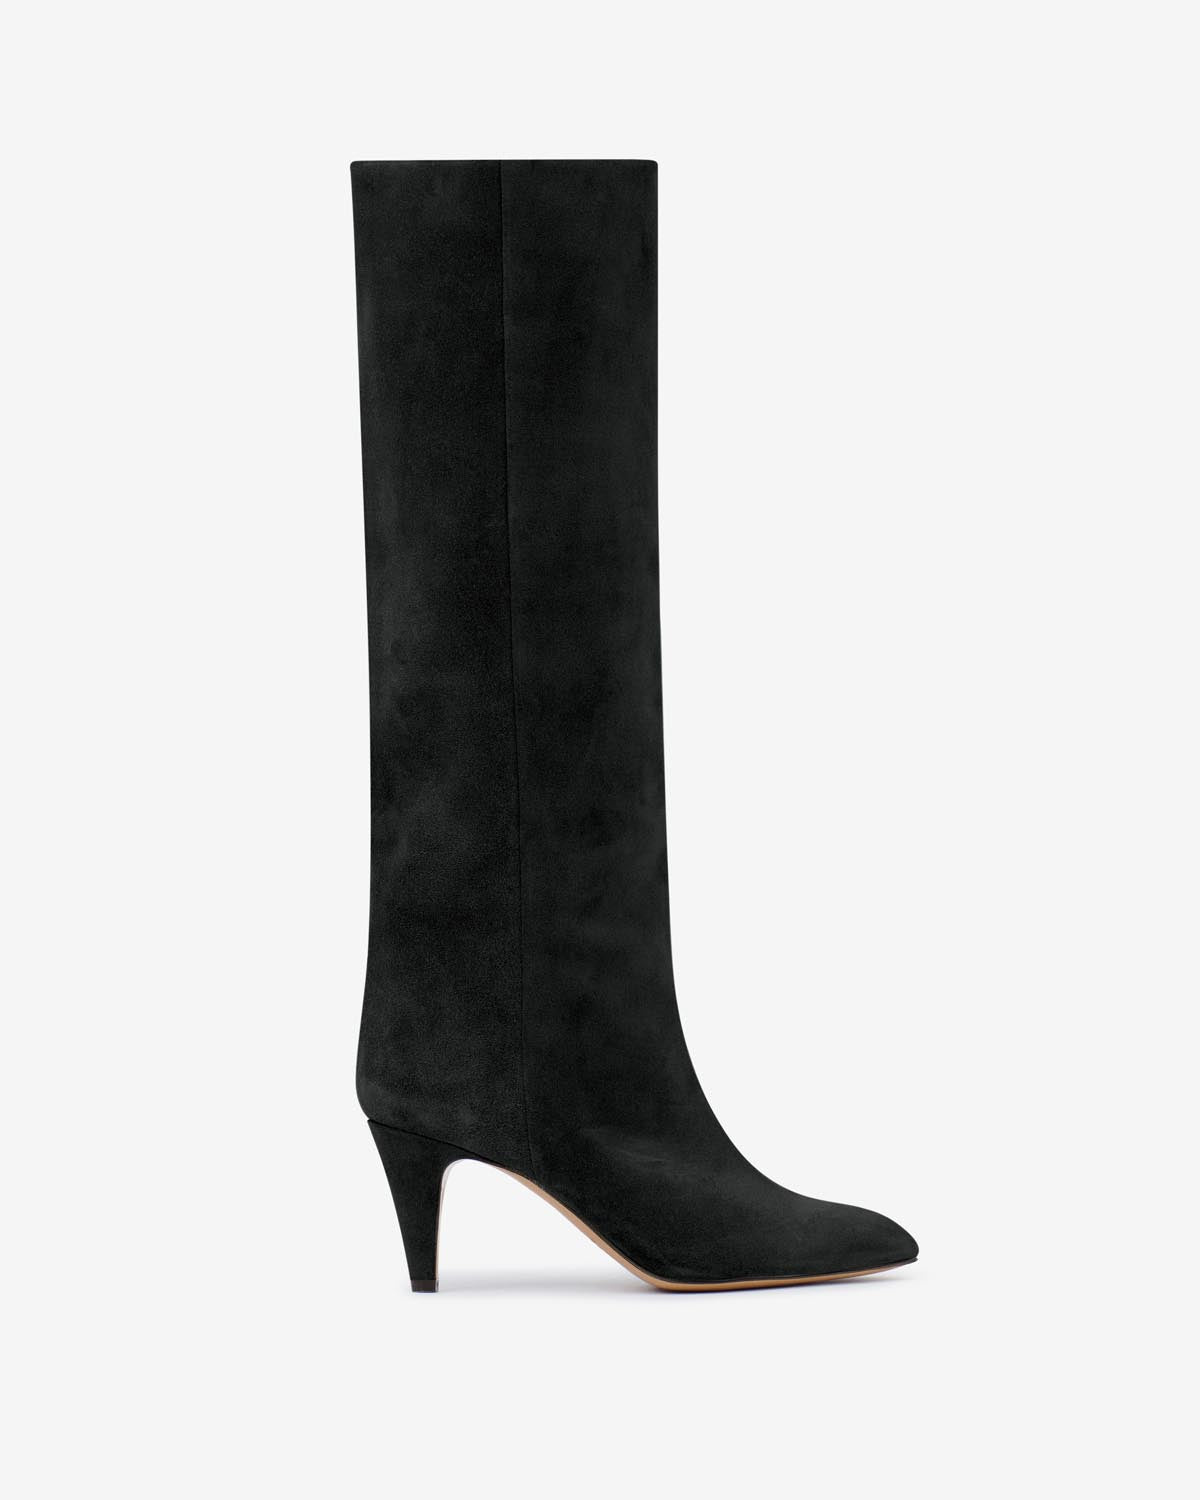 Laspi boots Woman Black 1